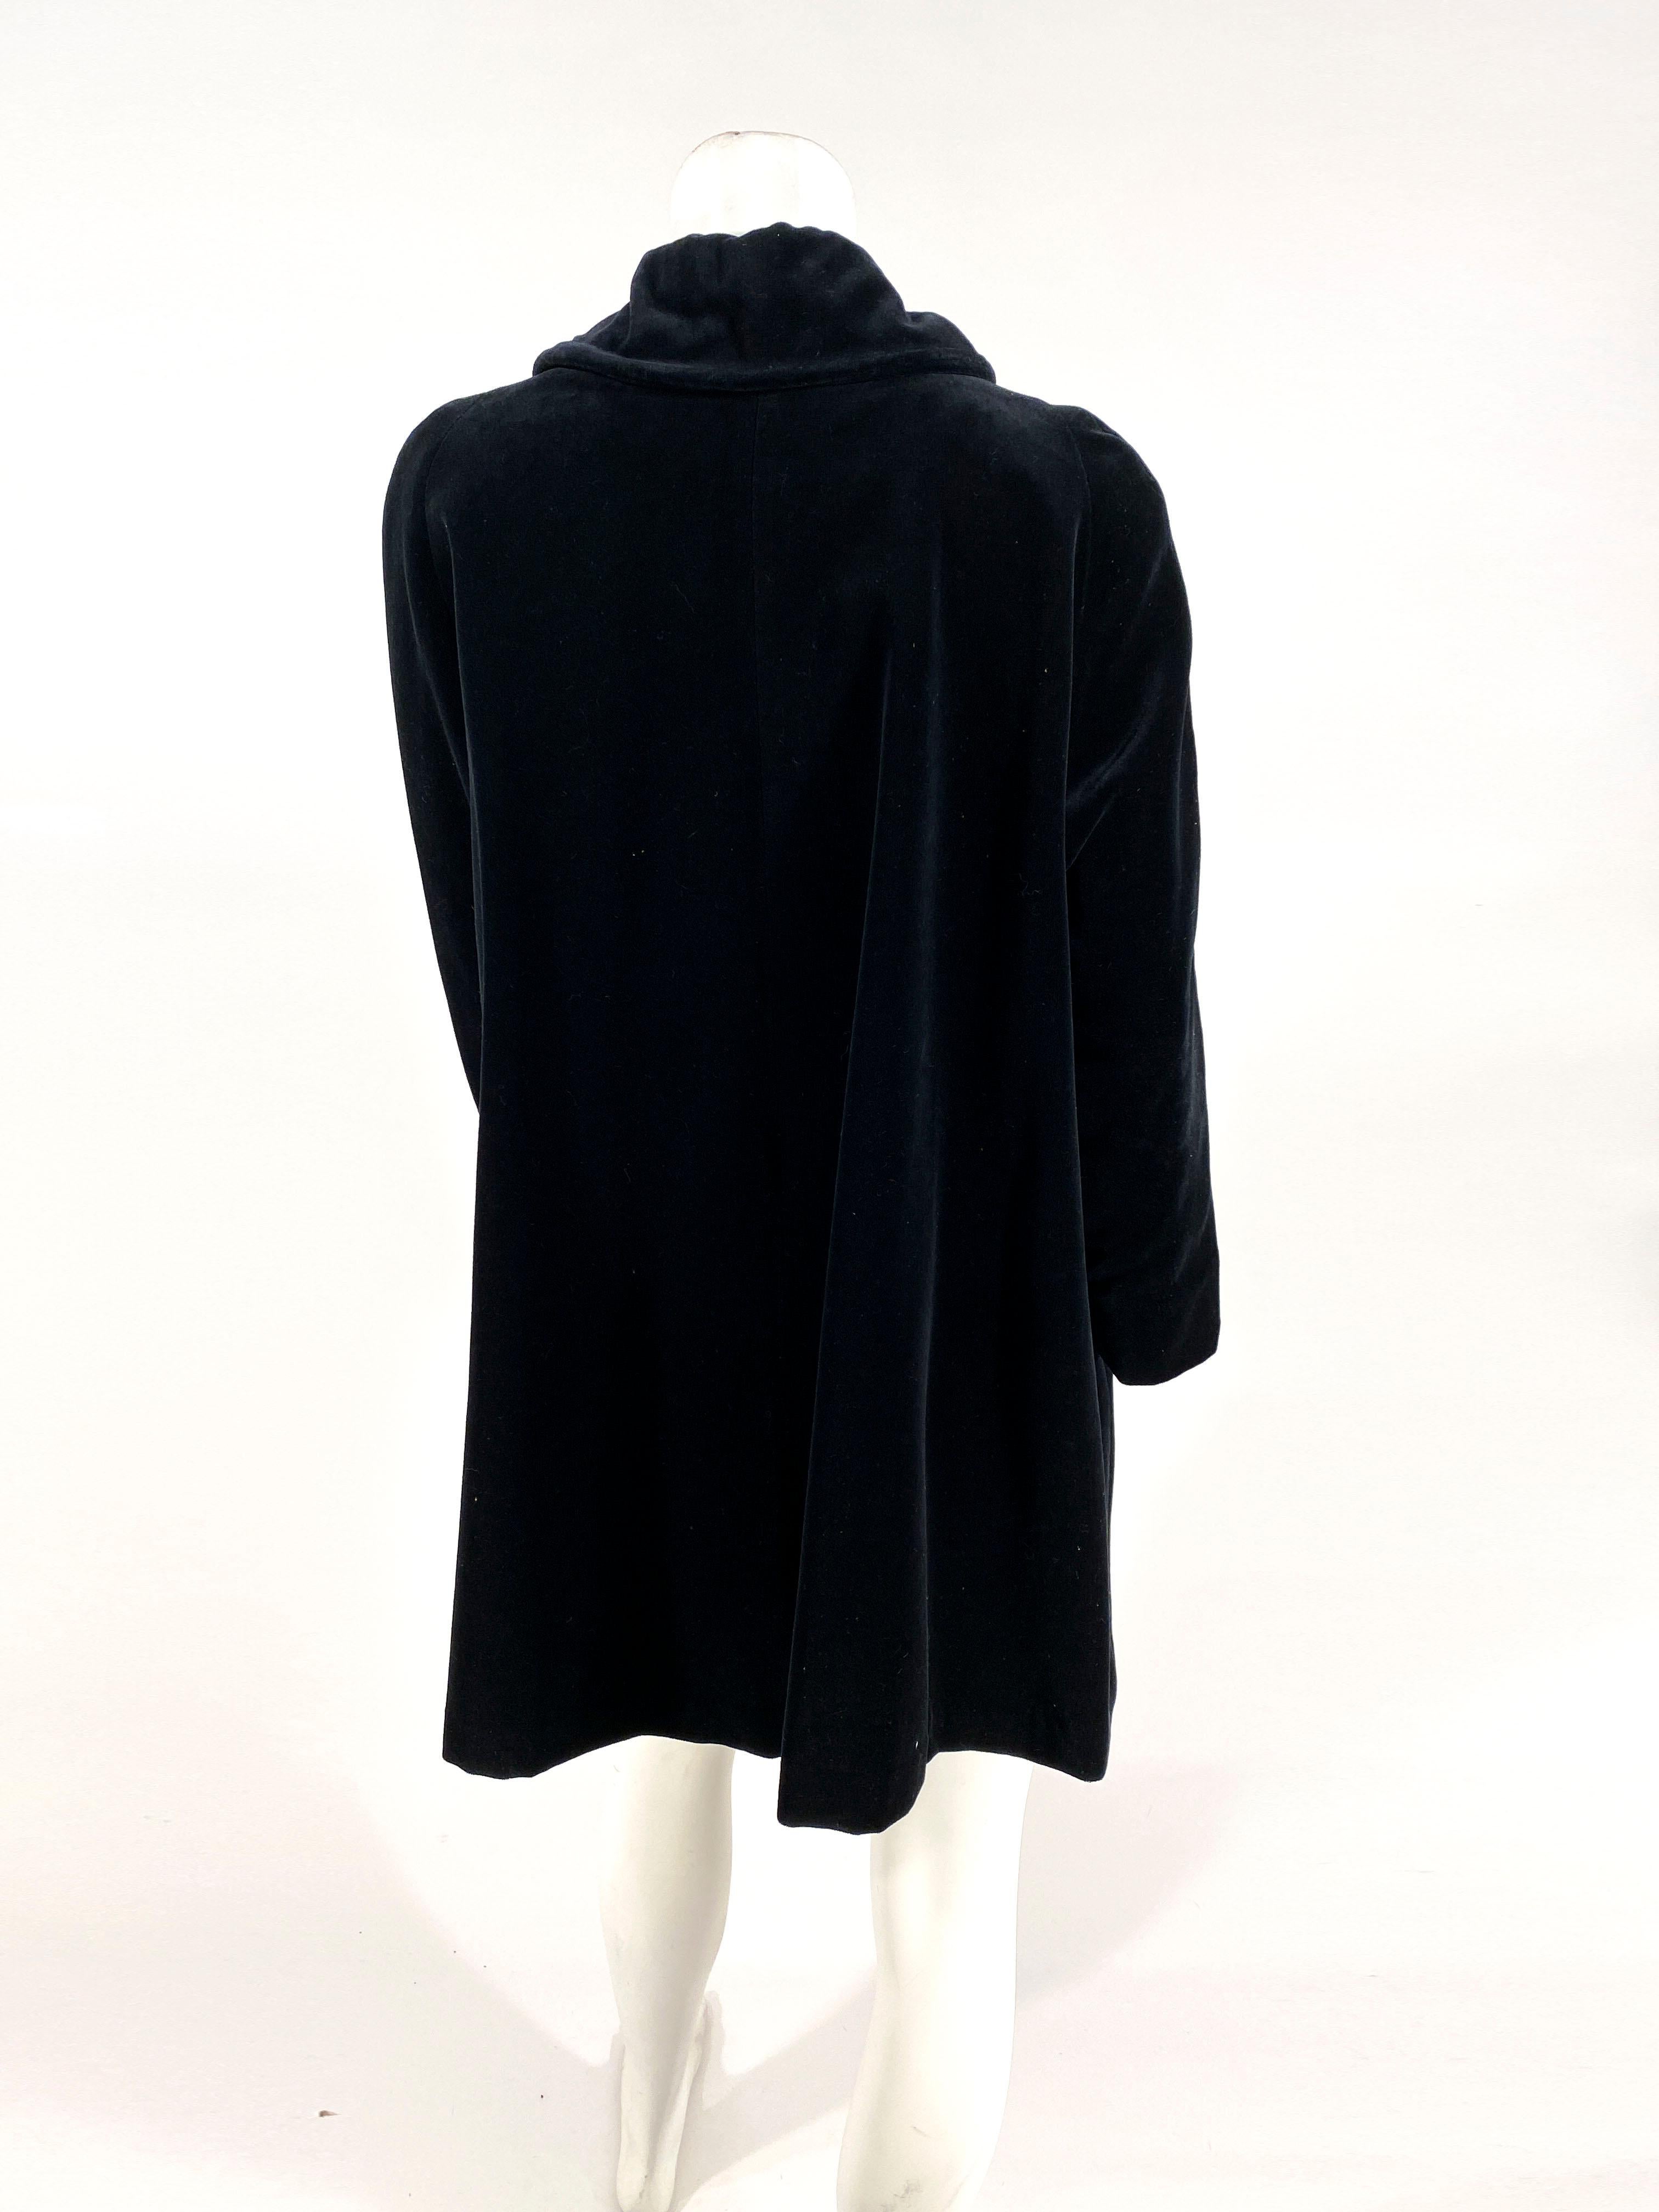 Women's 1950s Black Velvet Evening Jacket